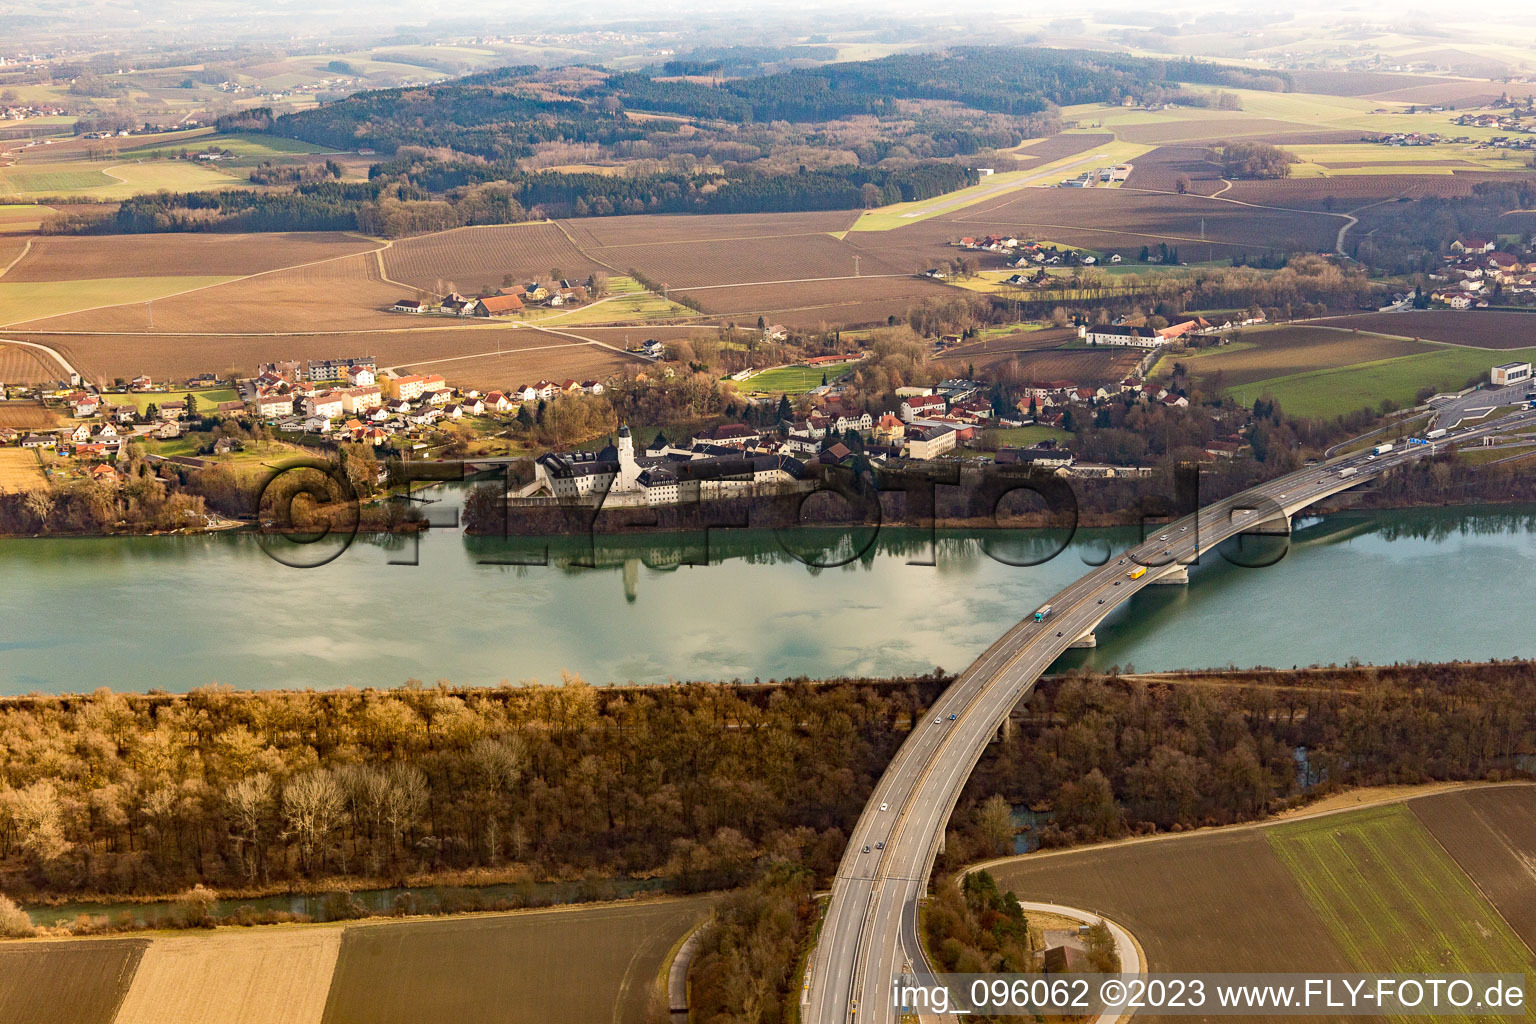 Luftbild von Suben, Strafvollzugsanstalt Innautobahnbrücke im Bundesland Oberösterreich, Österreich